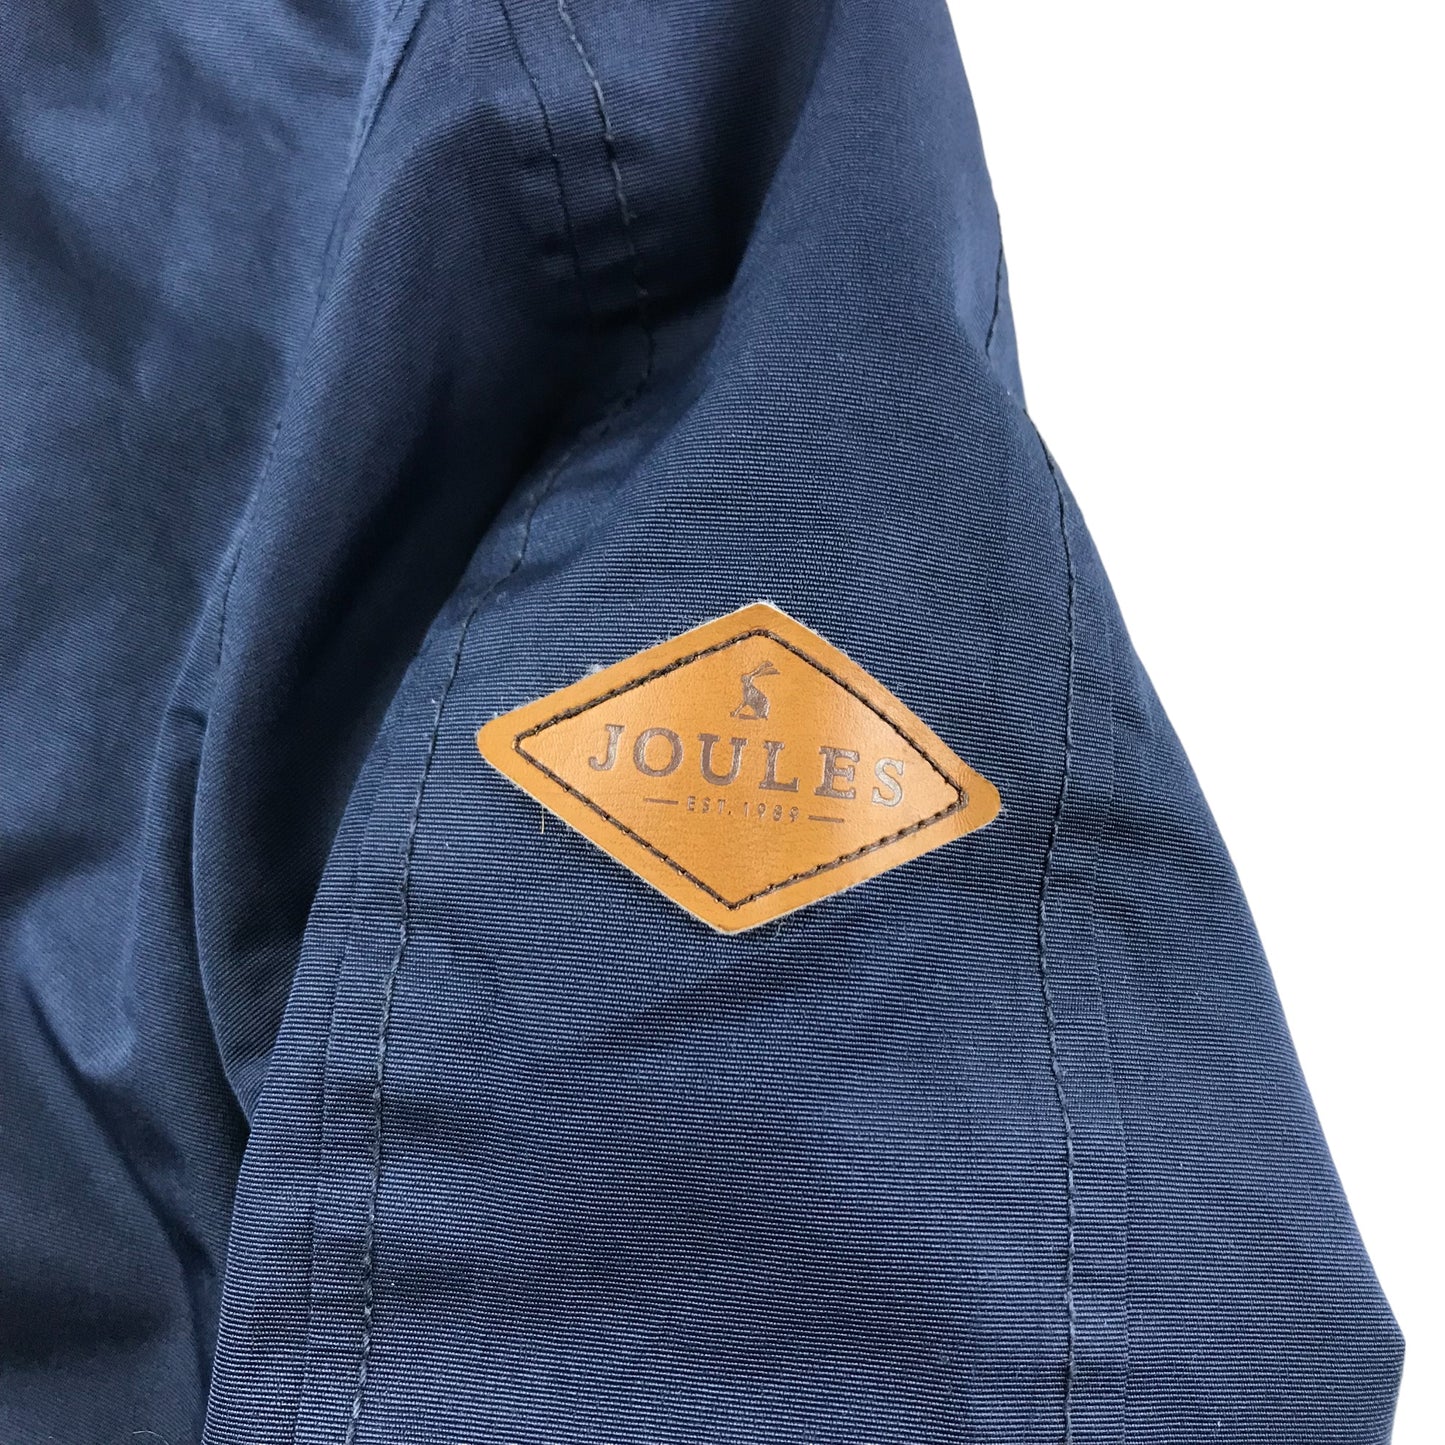 Joules Jacket Age 5-6 Navy Blue Waterproof Fleece Lined A-line